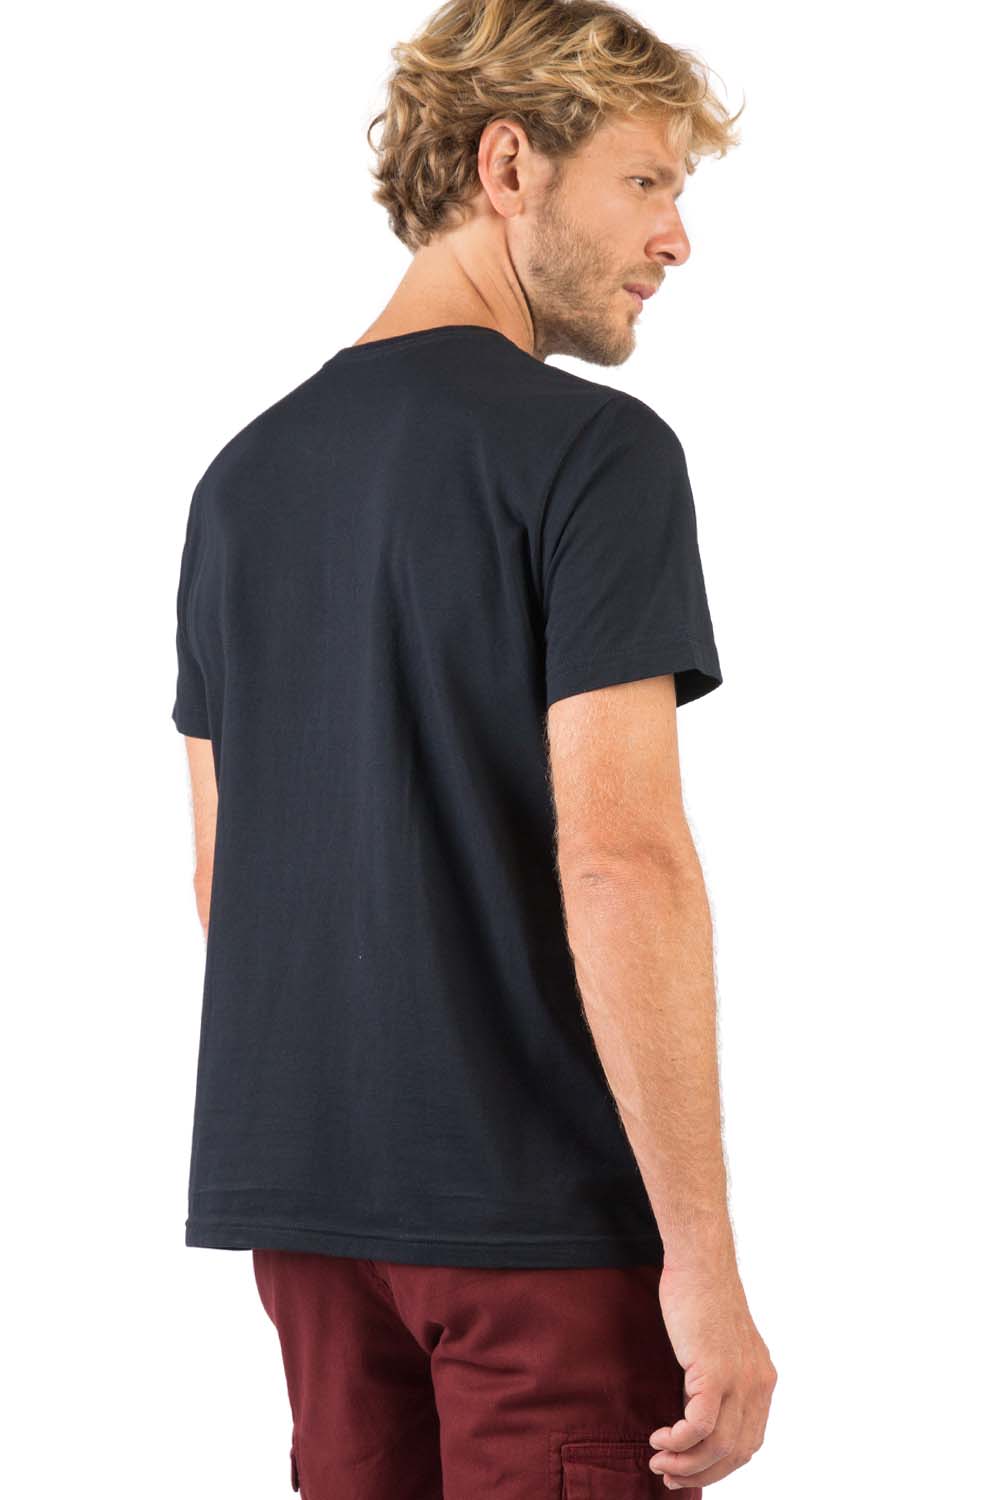 T-Shirt Básica Comfort Masculina Preto